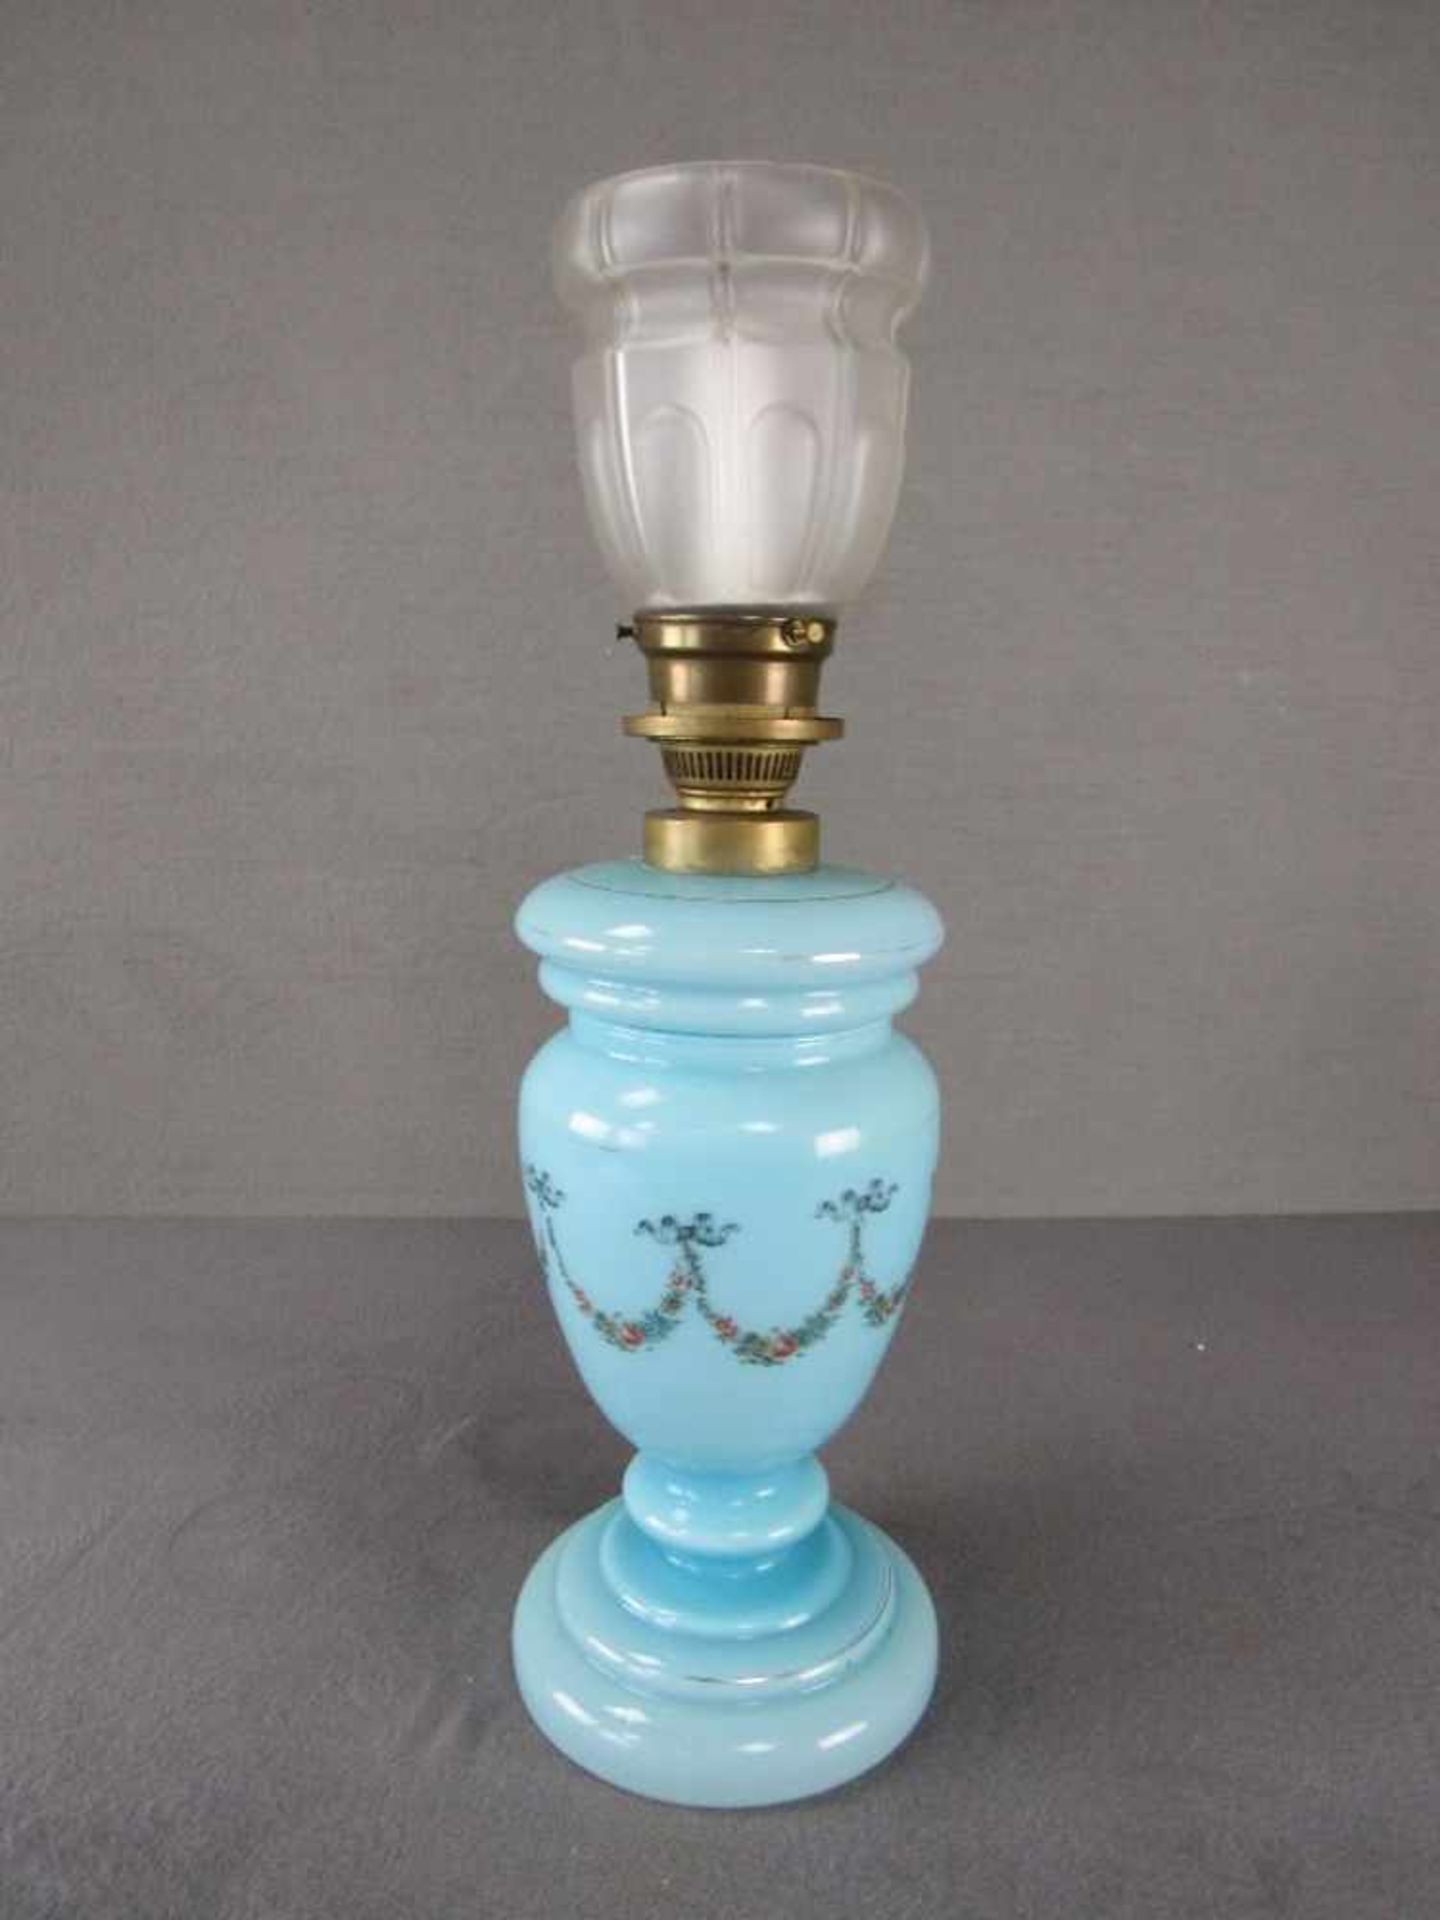 Restaurationsobjekt Tischlampe Petroleumlampe Kerzenlampe 47cm hoch - Bild 2 aus 3